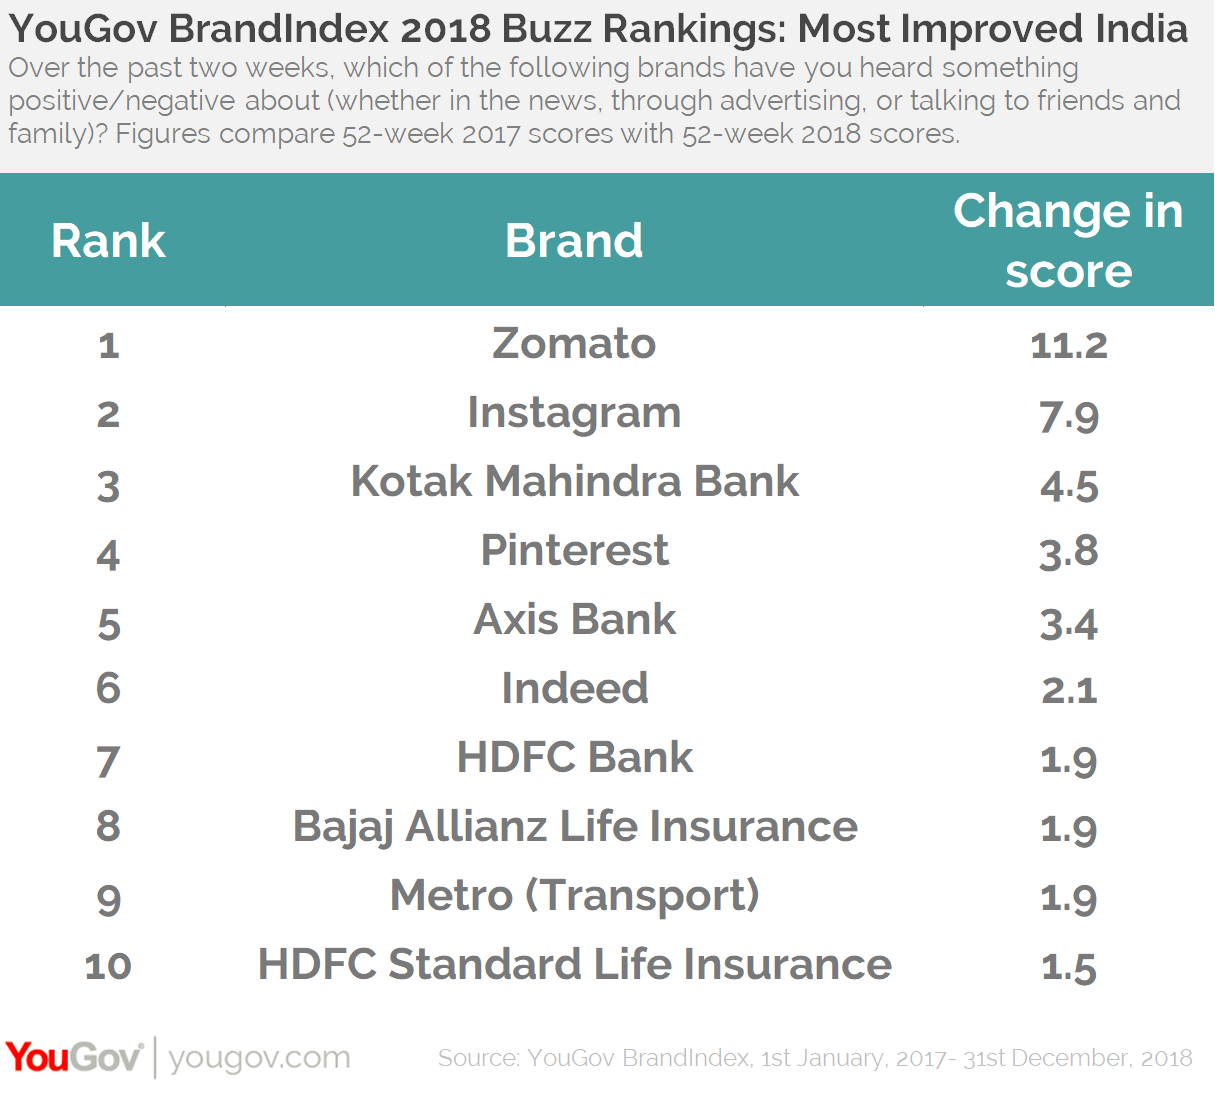 YouGov BrandIndex Buzz Rankings 2018- Top Improvers India